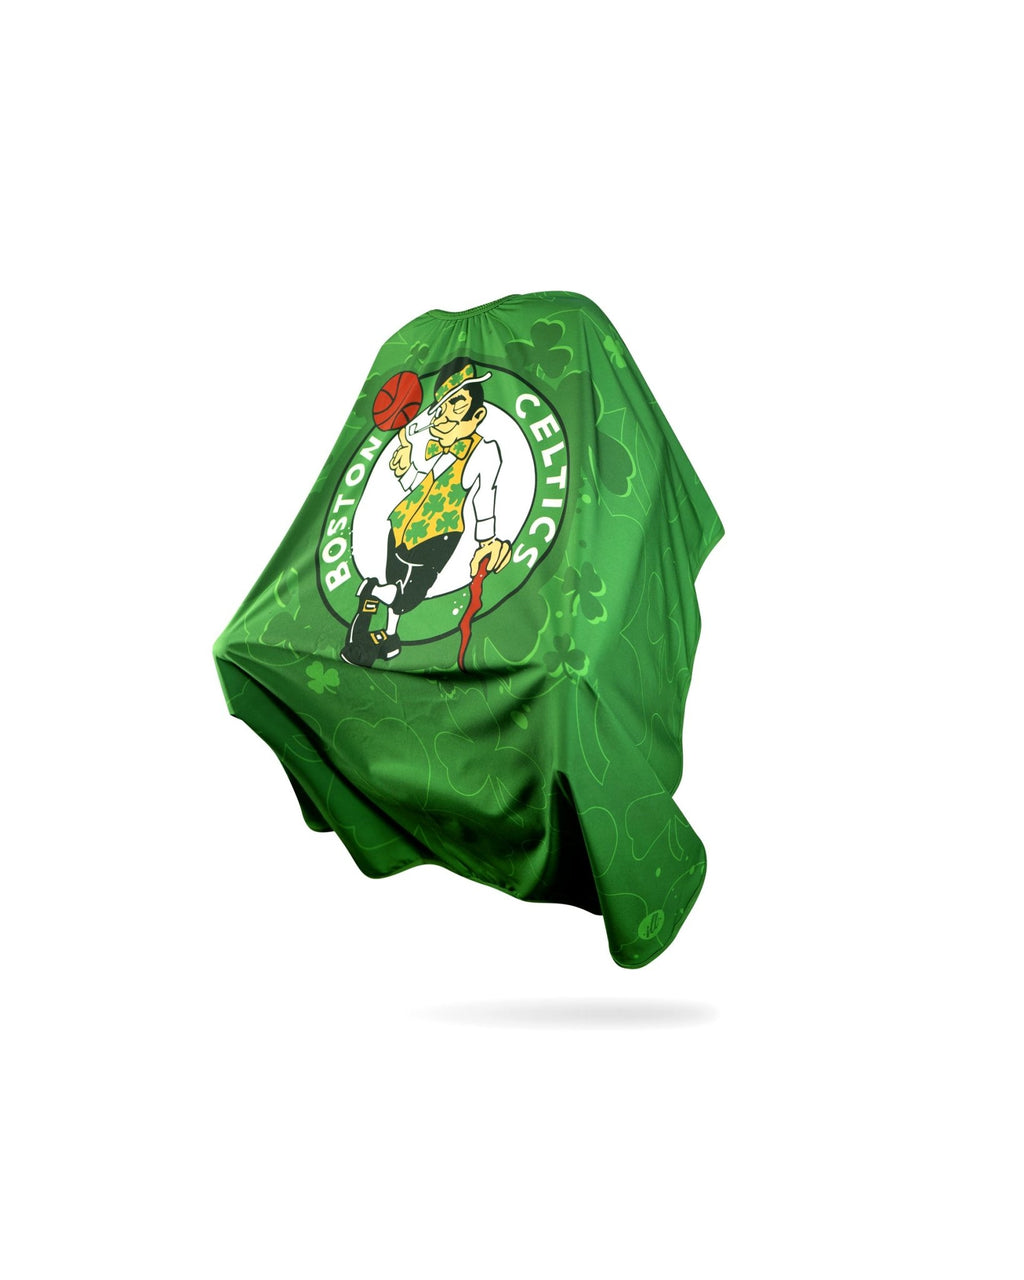 Cape fans scoop up Celtics merchandise